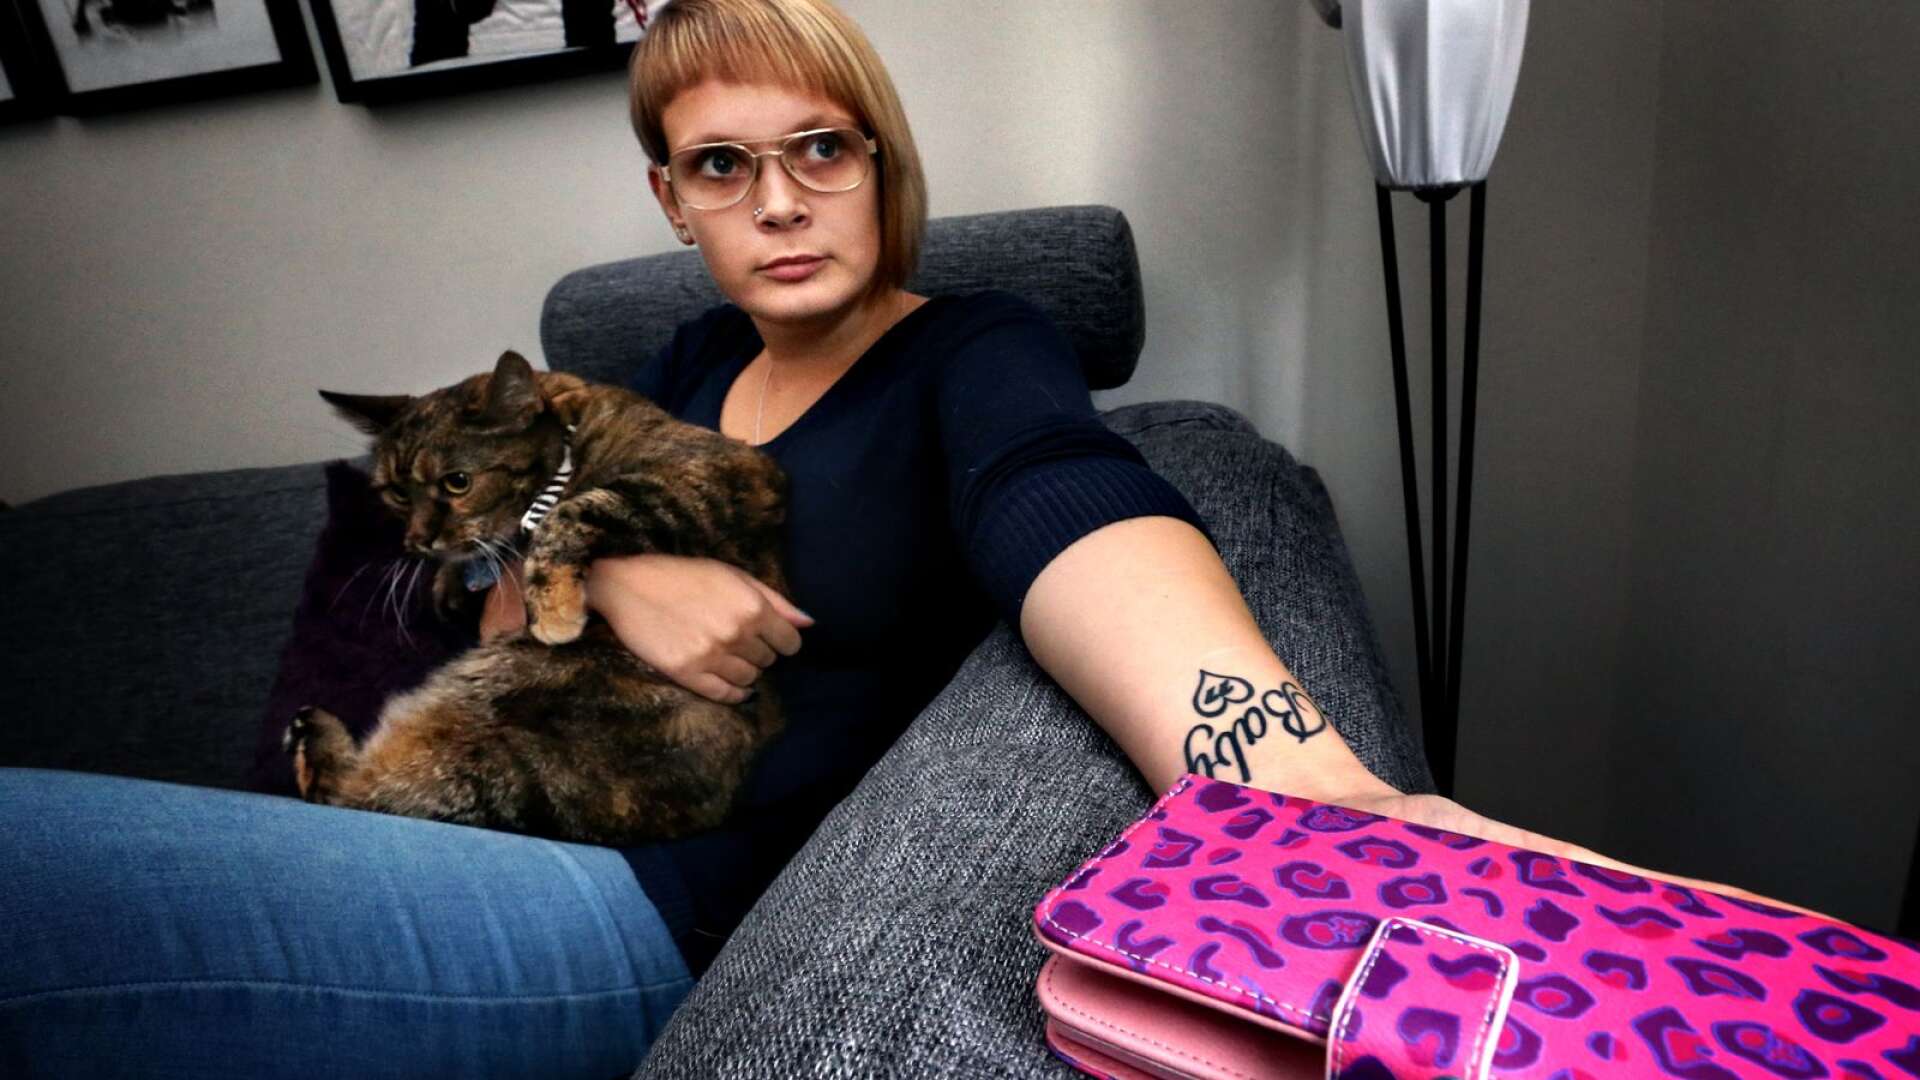 Joanna Halvardssons tatuering står för hennes katt, bandet Backyard babies, familjen, pojkvännen och bäste vännen. &quot;Den sitter på min vänstra handled, där de flesta av mina självskadeärr är&quot;. Hon har överlevt åtta självmordsförsök. Nu är det över två år sedan hon slutade skada sig själv.